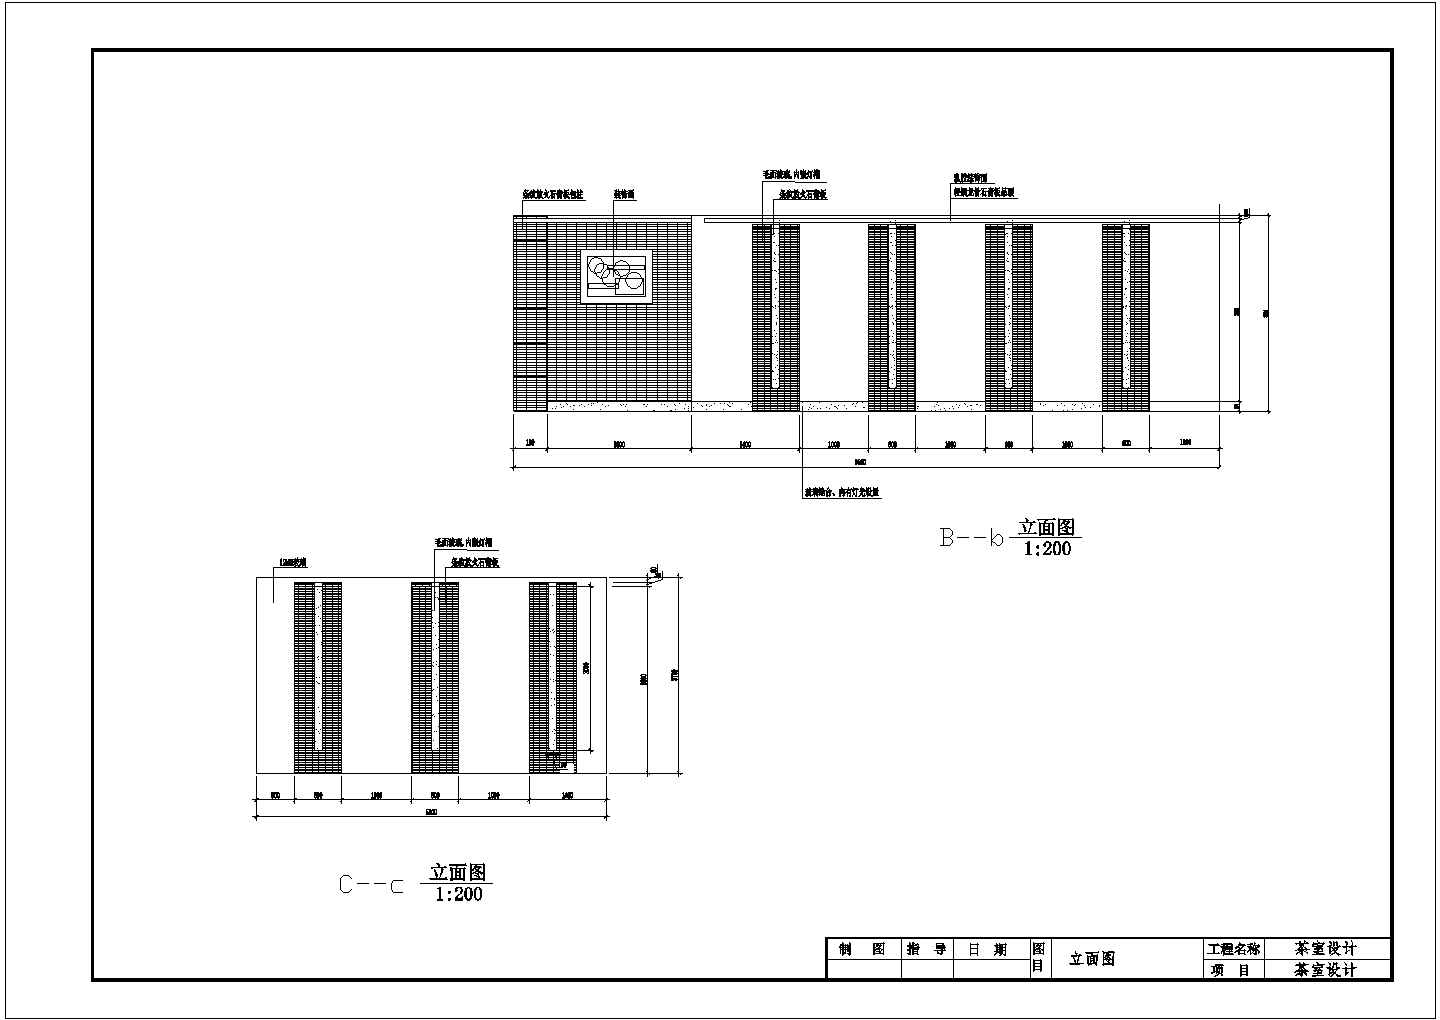 二层不规则中小型茶室建筑设计方案cad图纸(长30米宽15米)